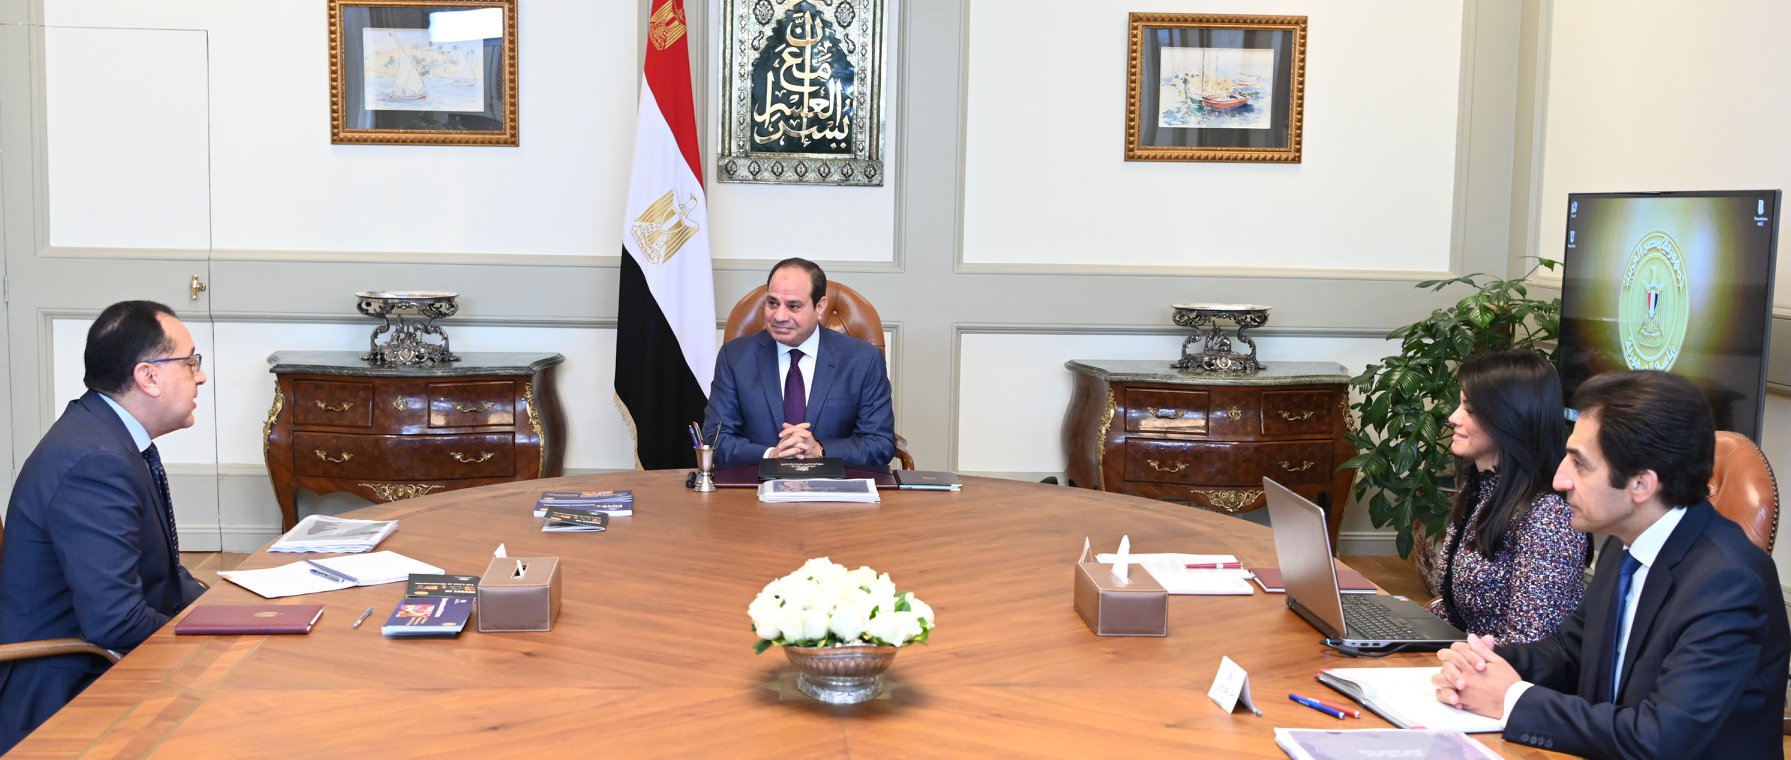   بسام راضى : الرئيس السيسى يوجه الحكومة بالاستخدام الأمثل لتمويل المؤسسات الدولية